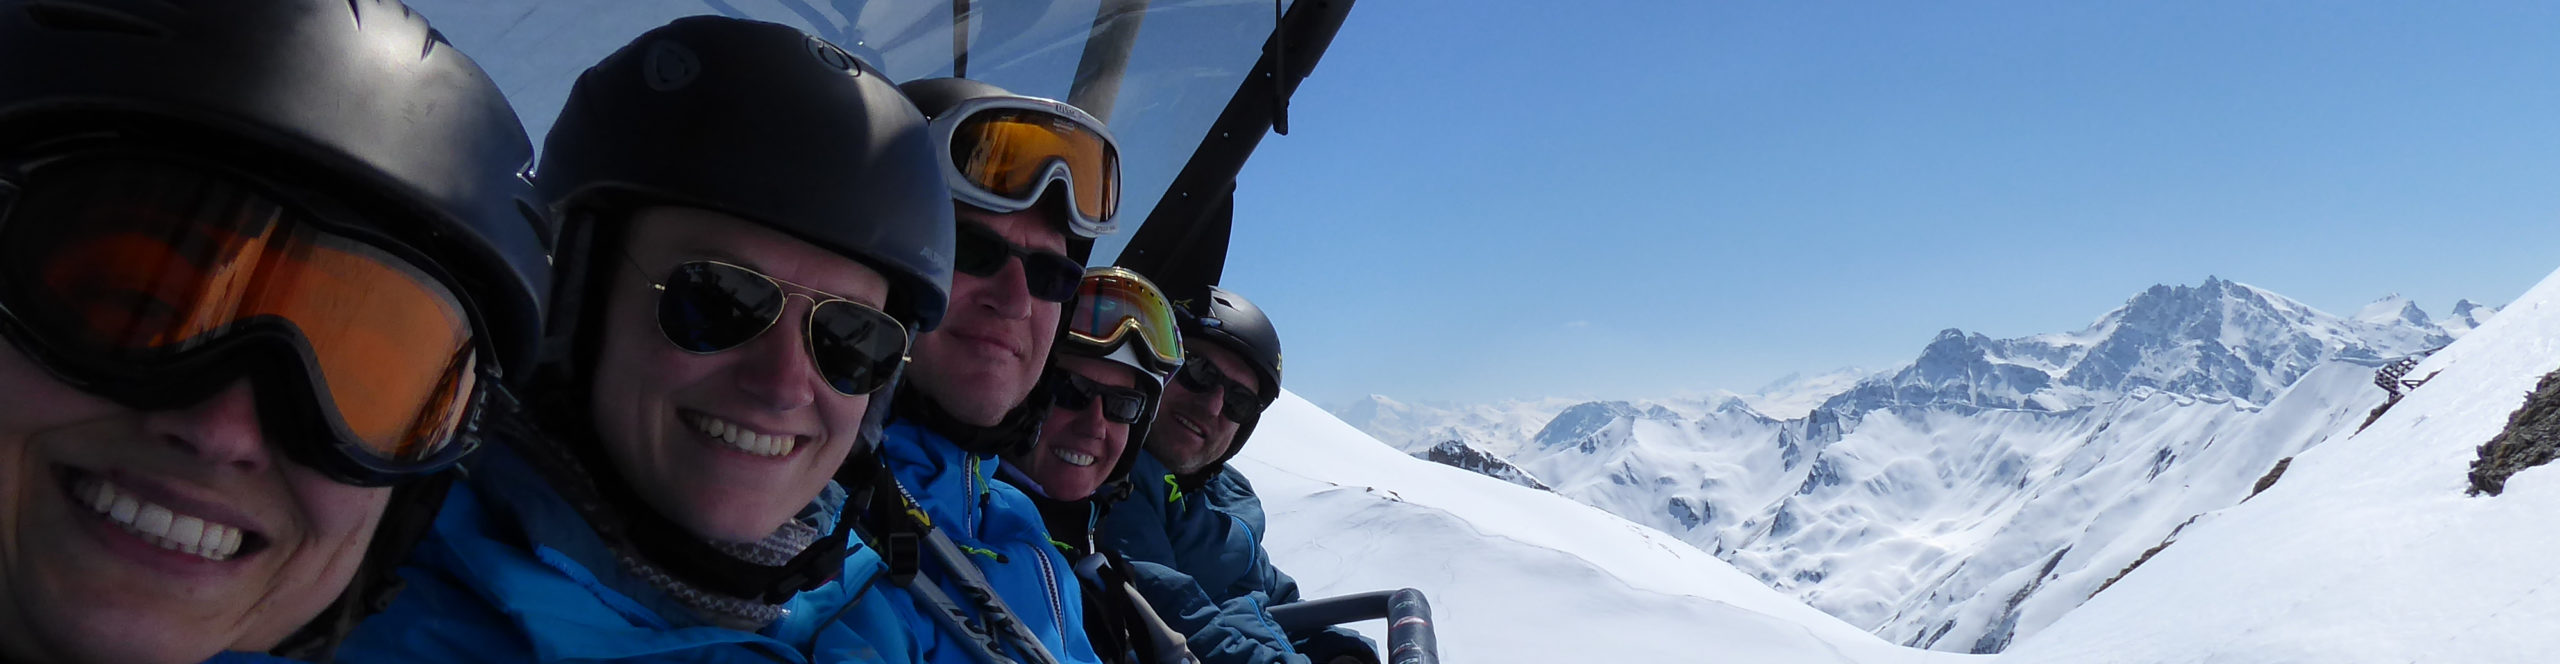 ISCHGL, SERFAUS, SÖLDEN – Skisafari über Ostern – 4 Schneetage – Österreichs beste Skigebiete 